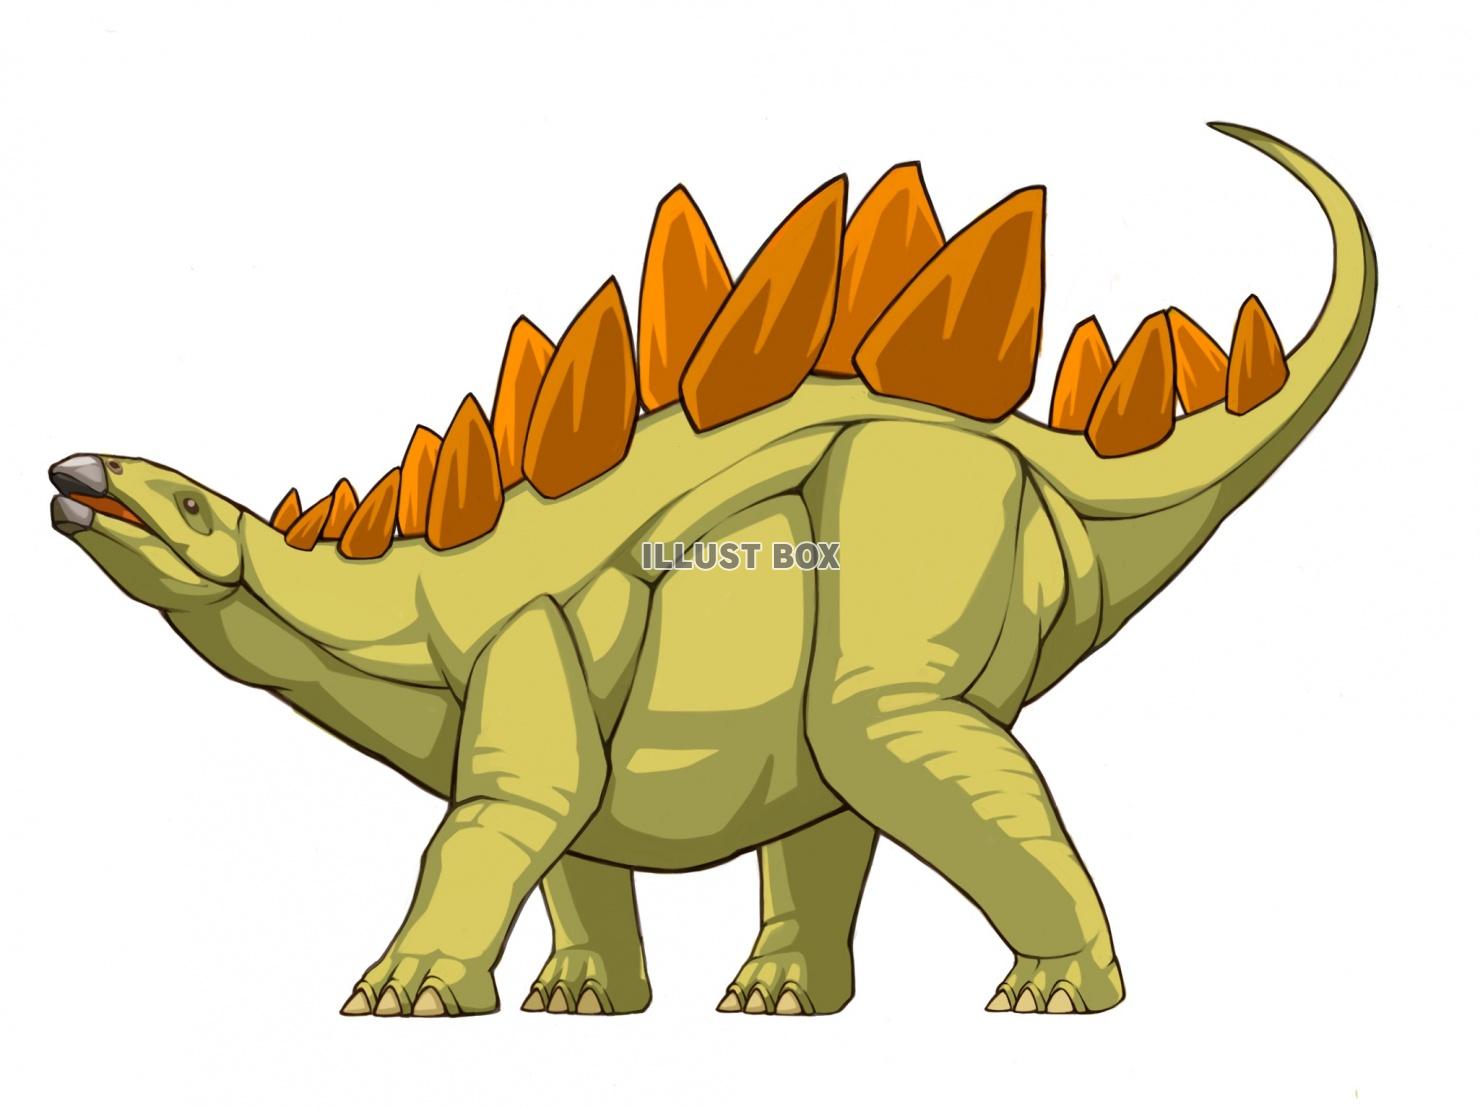 かわいい恐竜 ステゴサウルスのイラスト02 無料のフリー素材 イラストエイト ステゴサウルス恐竜のかわいいイラスト ポスター Ciudaddelmaizslp Gob Mx